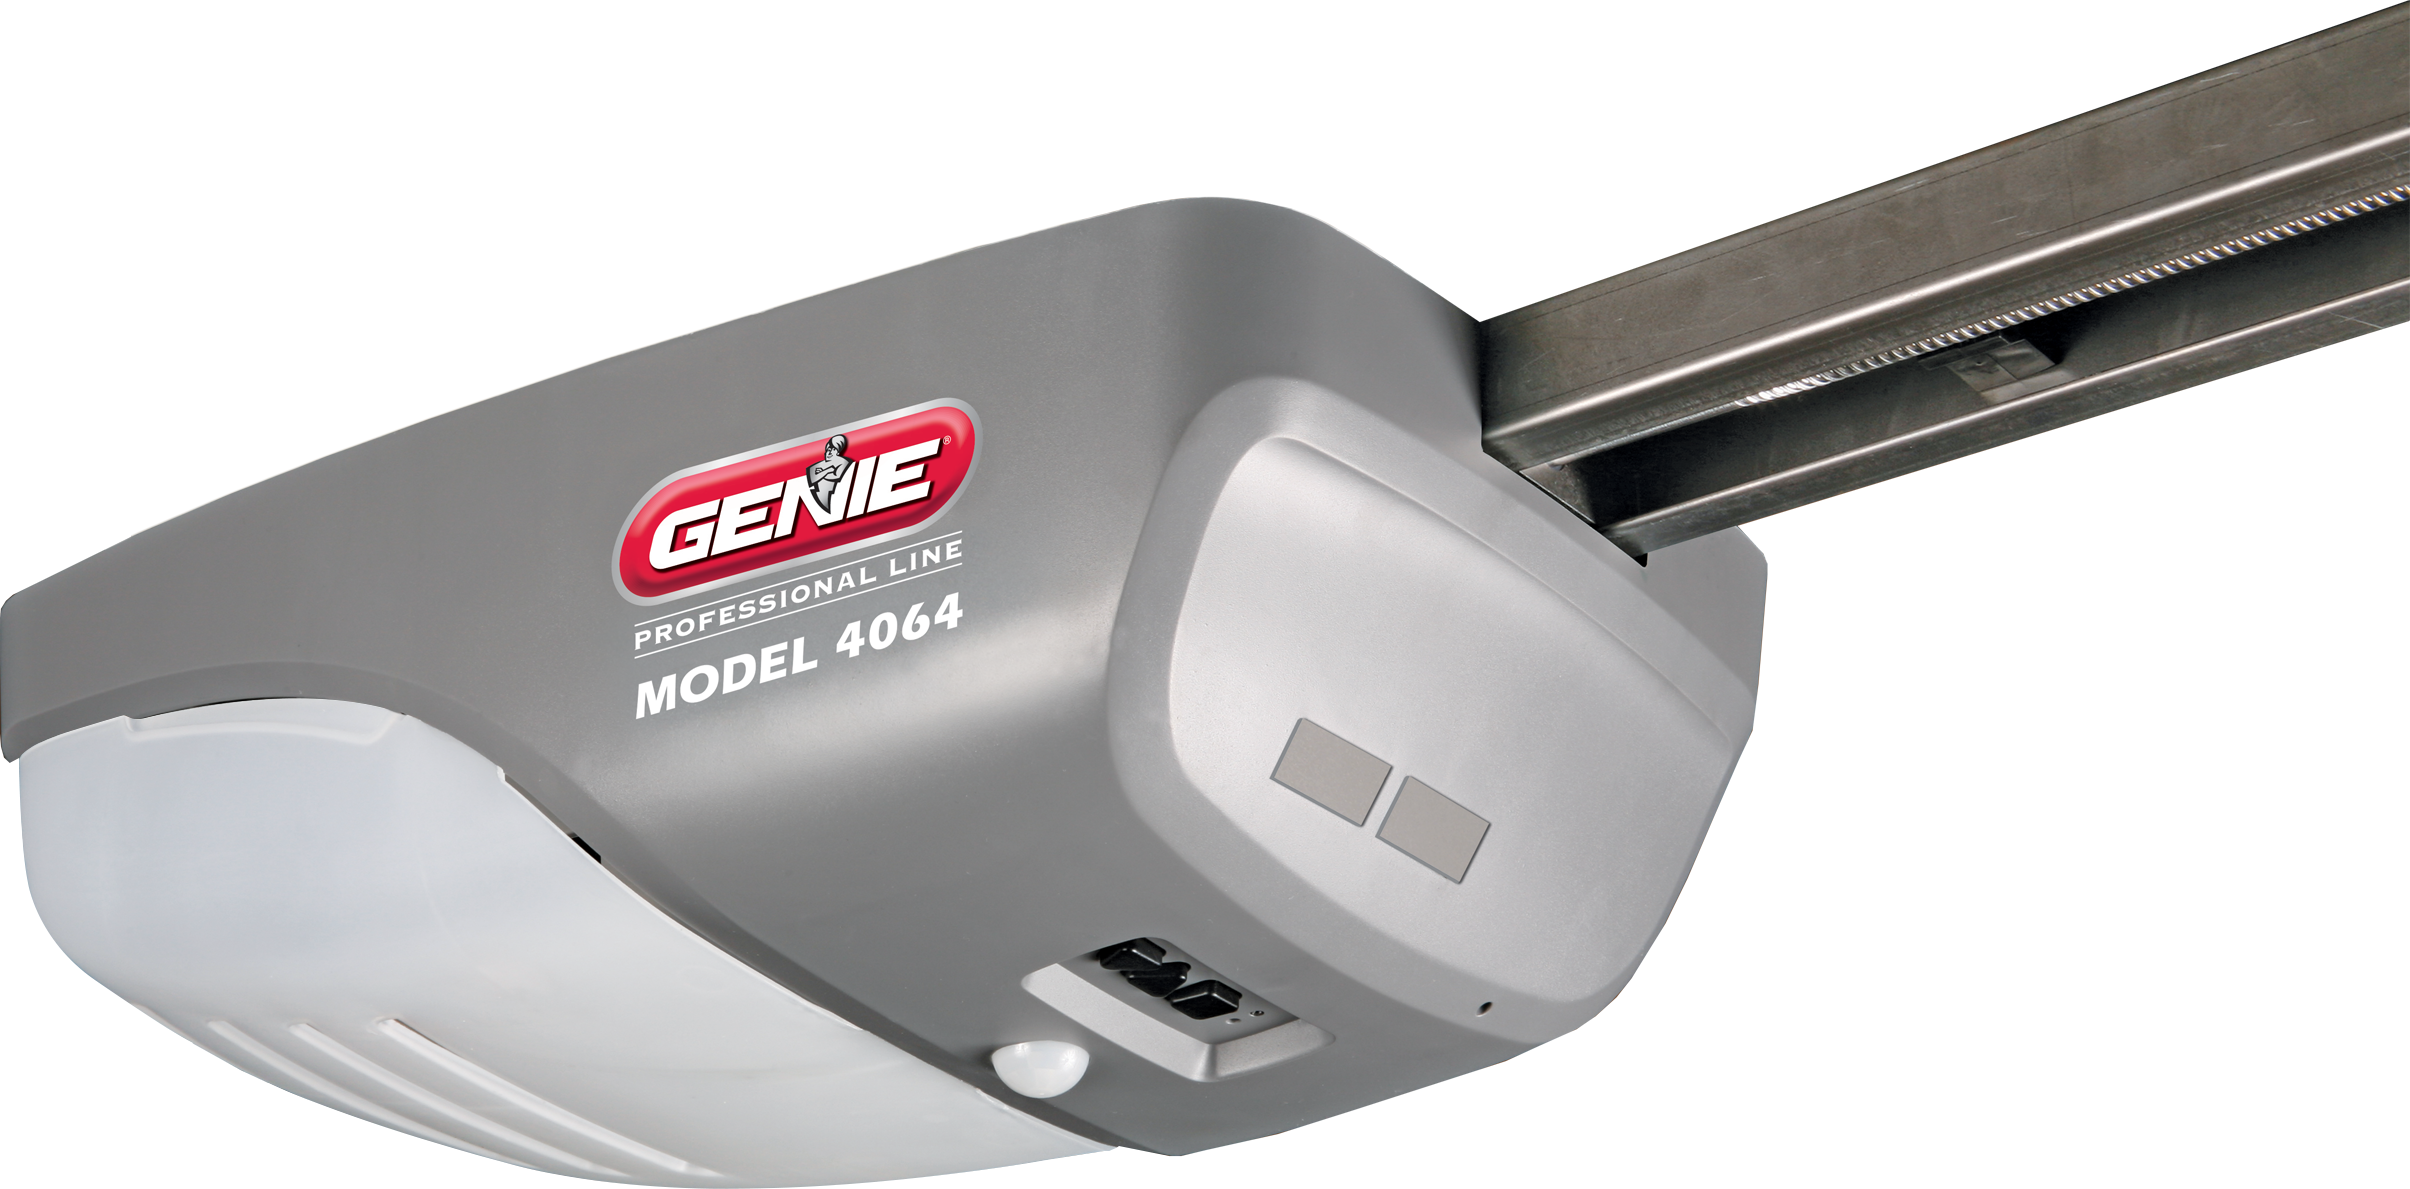 Genie ReliaG Pro 4064